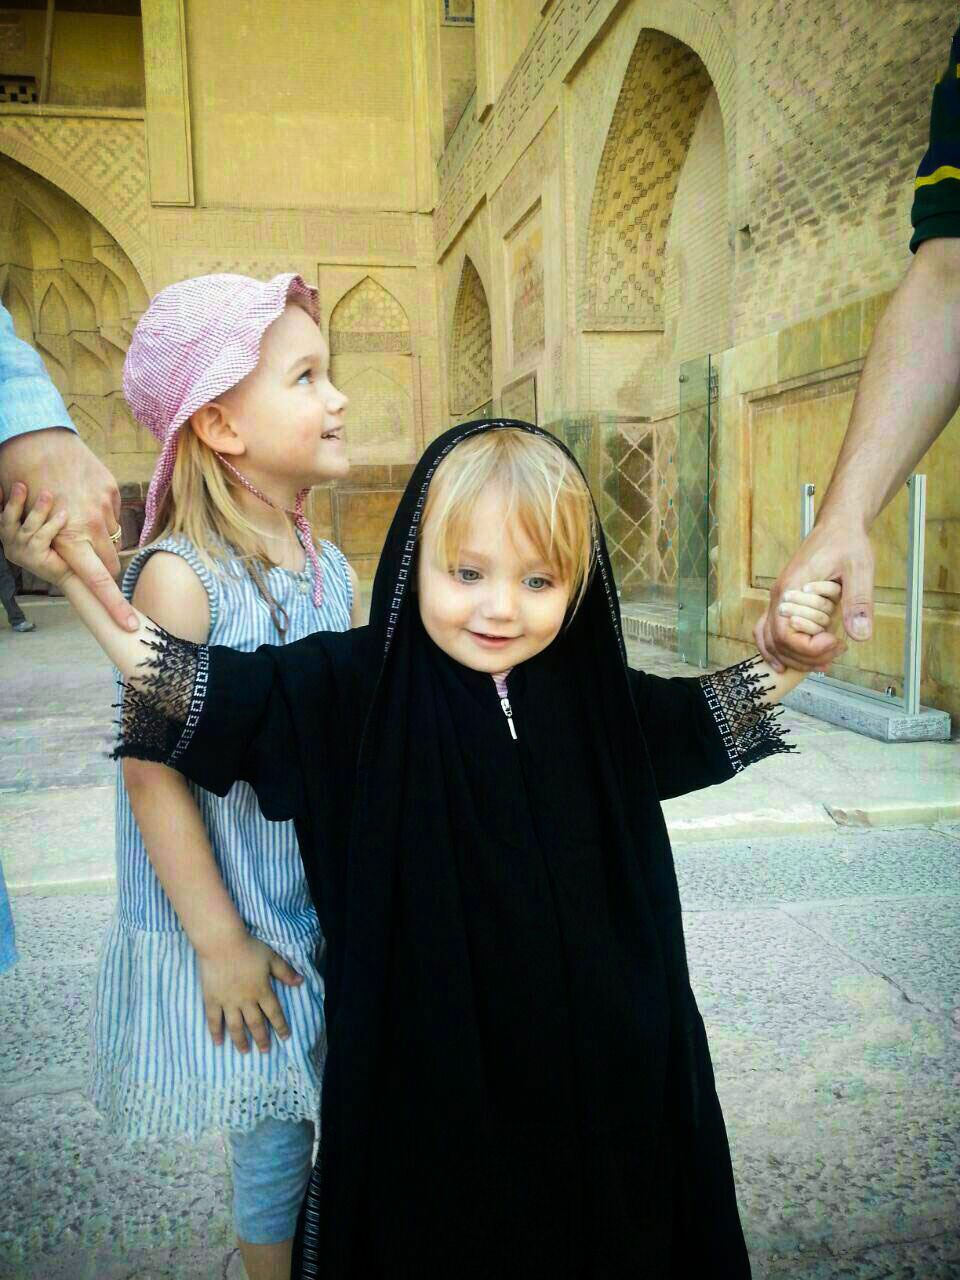 حجاب دختر فرانسوی در اصفهان +عکس